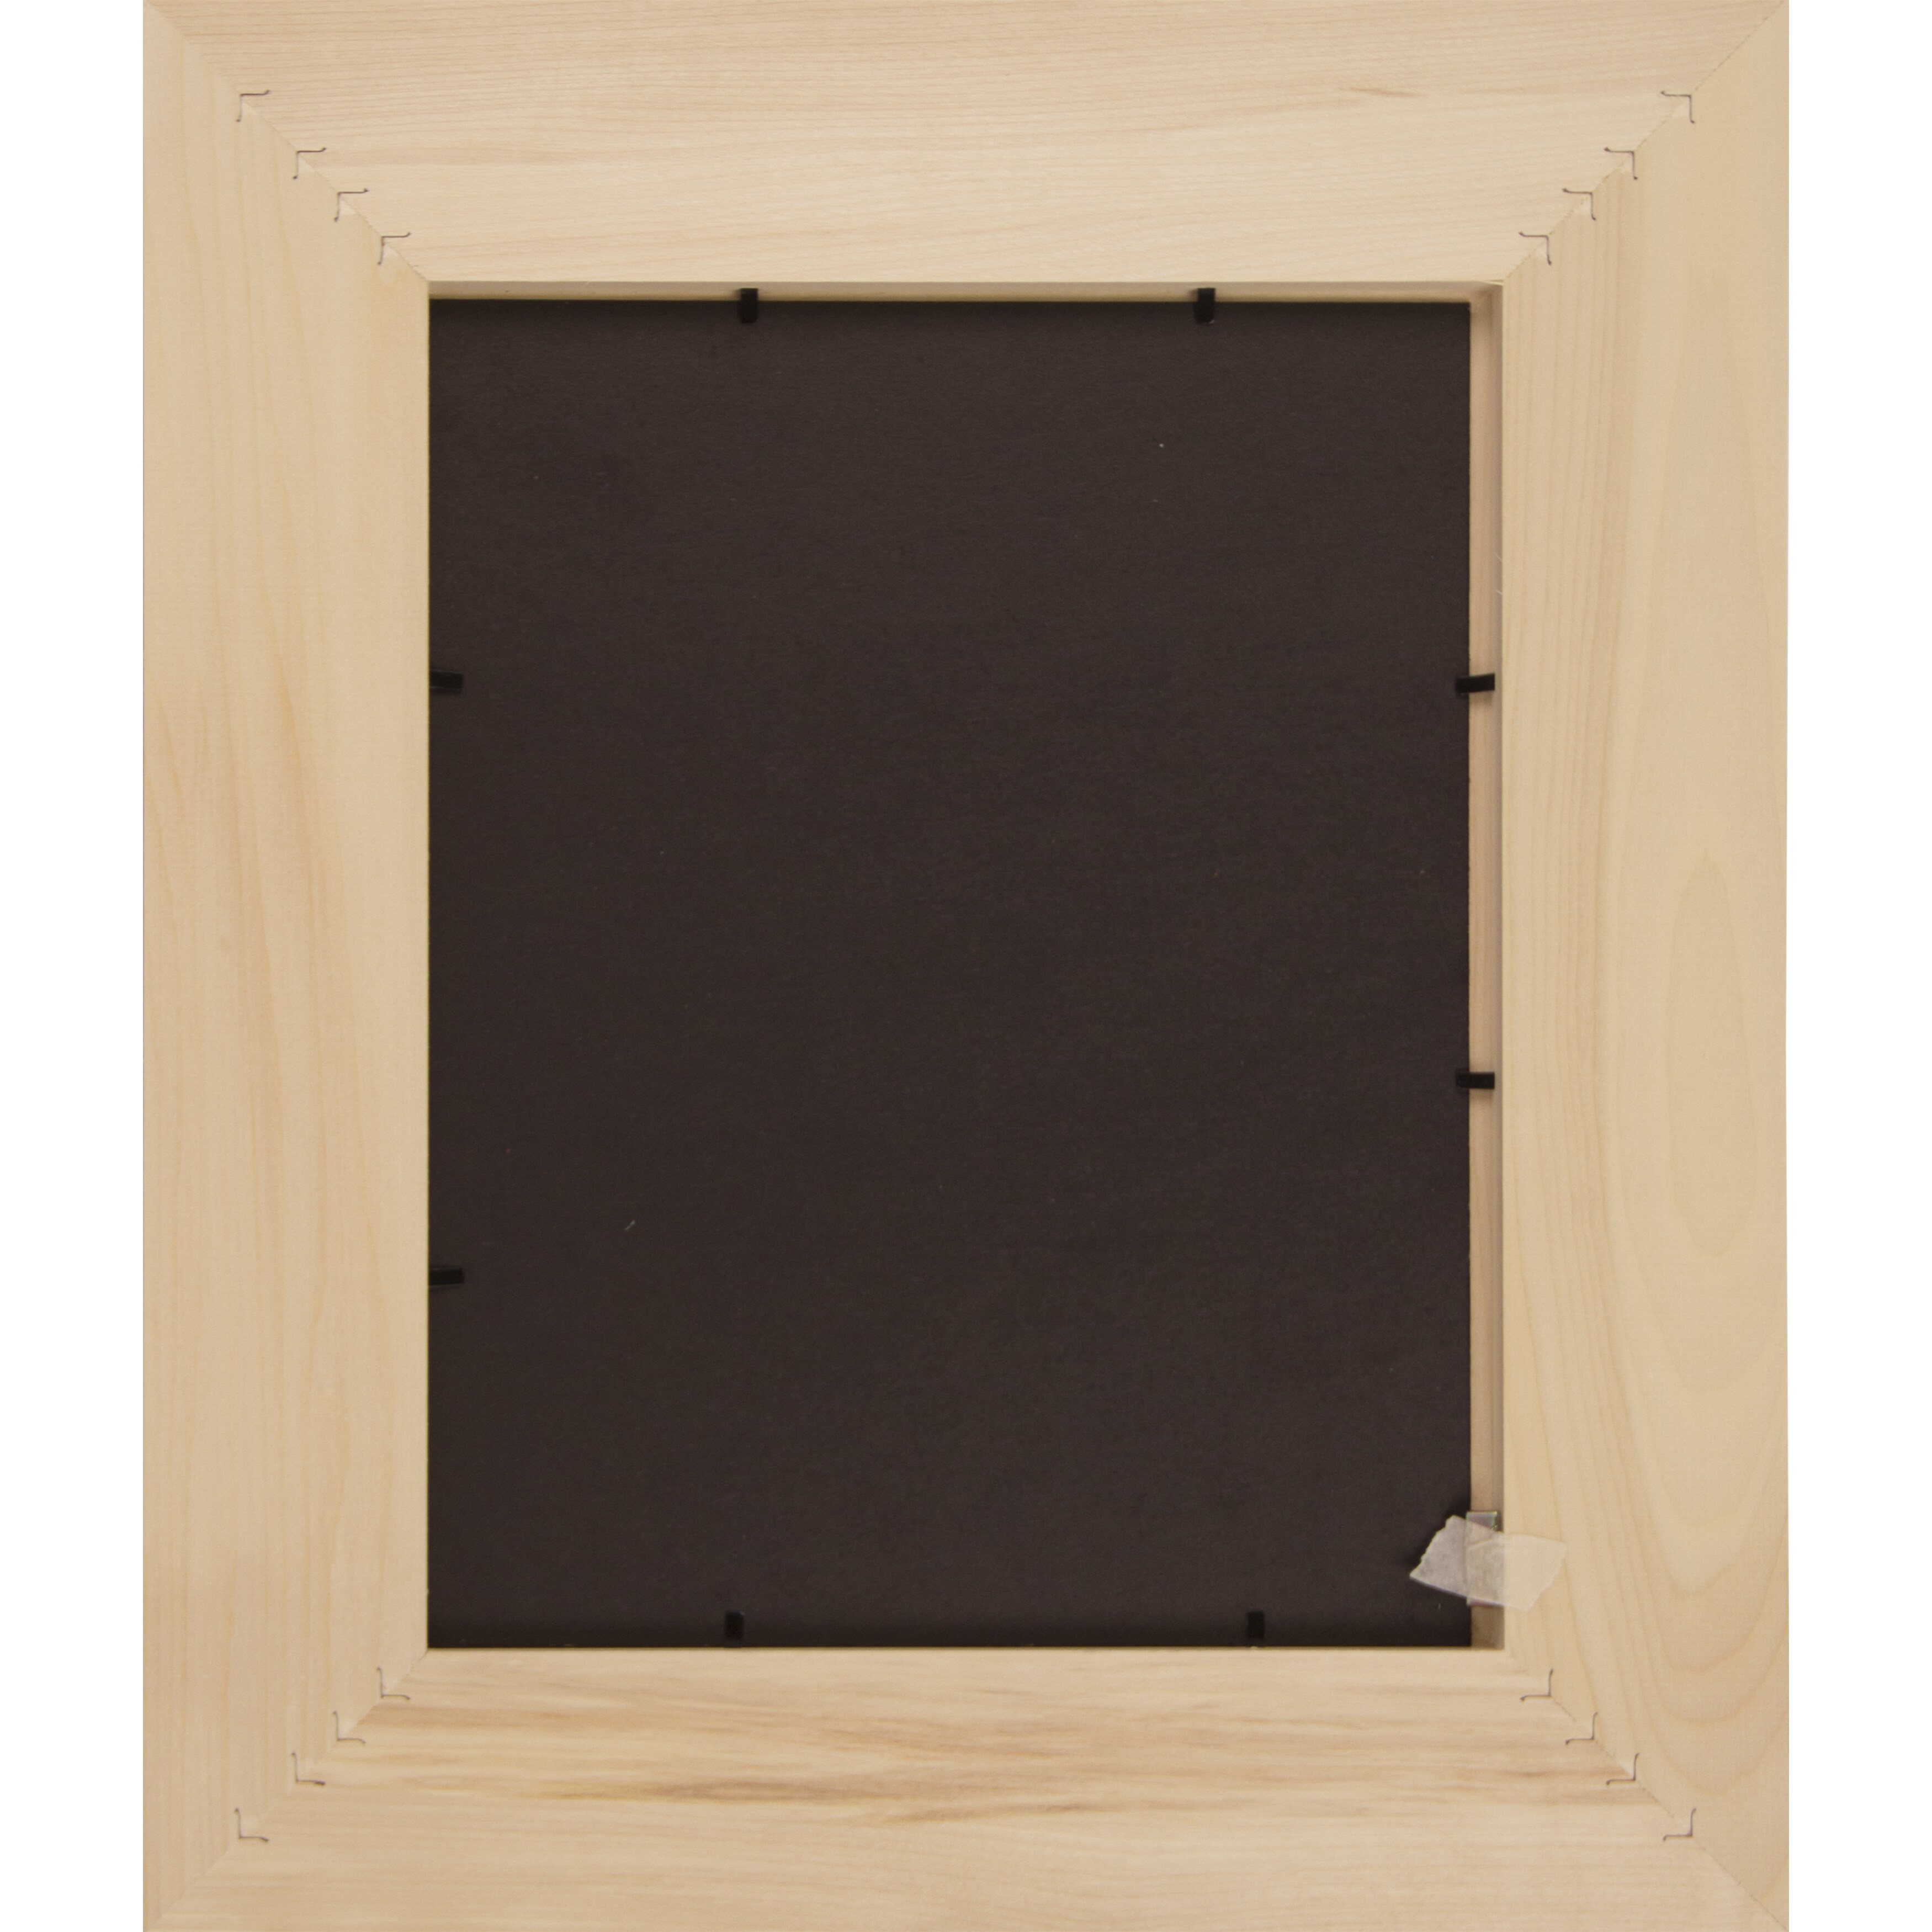 Unfinished Wood Photo Frame, 8”x 6”